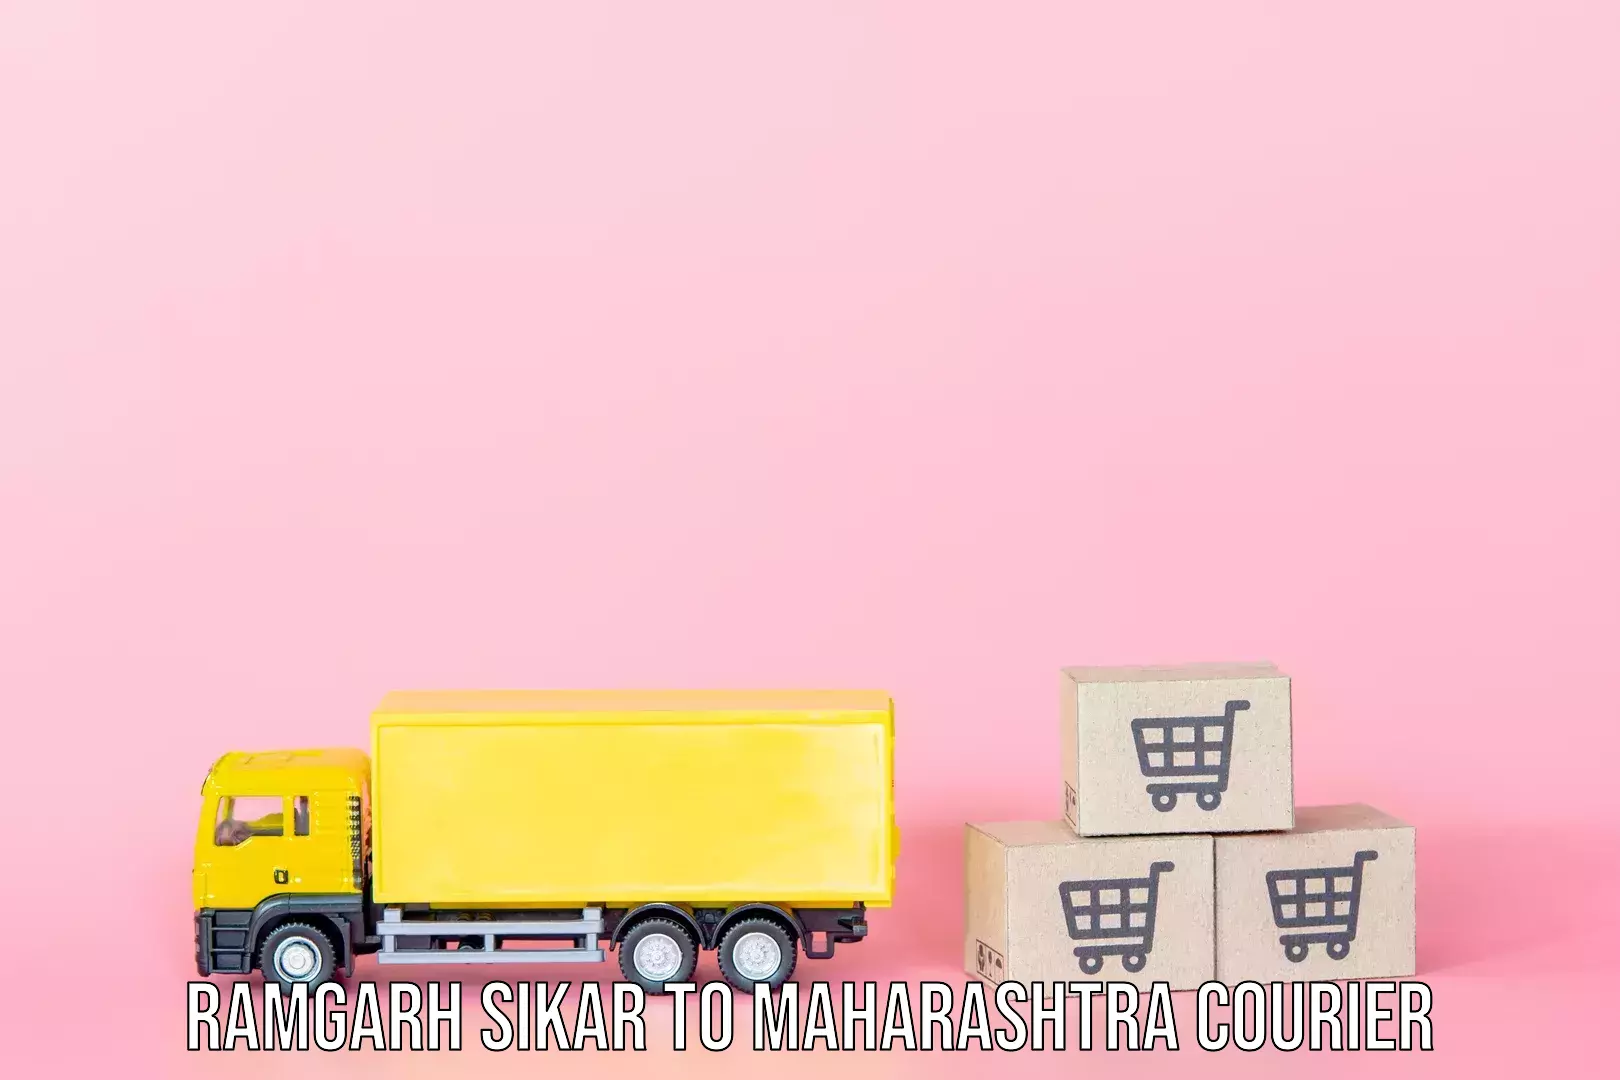 Express baggage shipping Ramgarh Sikar to Maharashtra